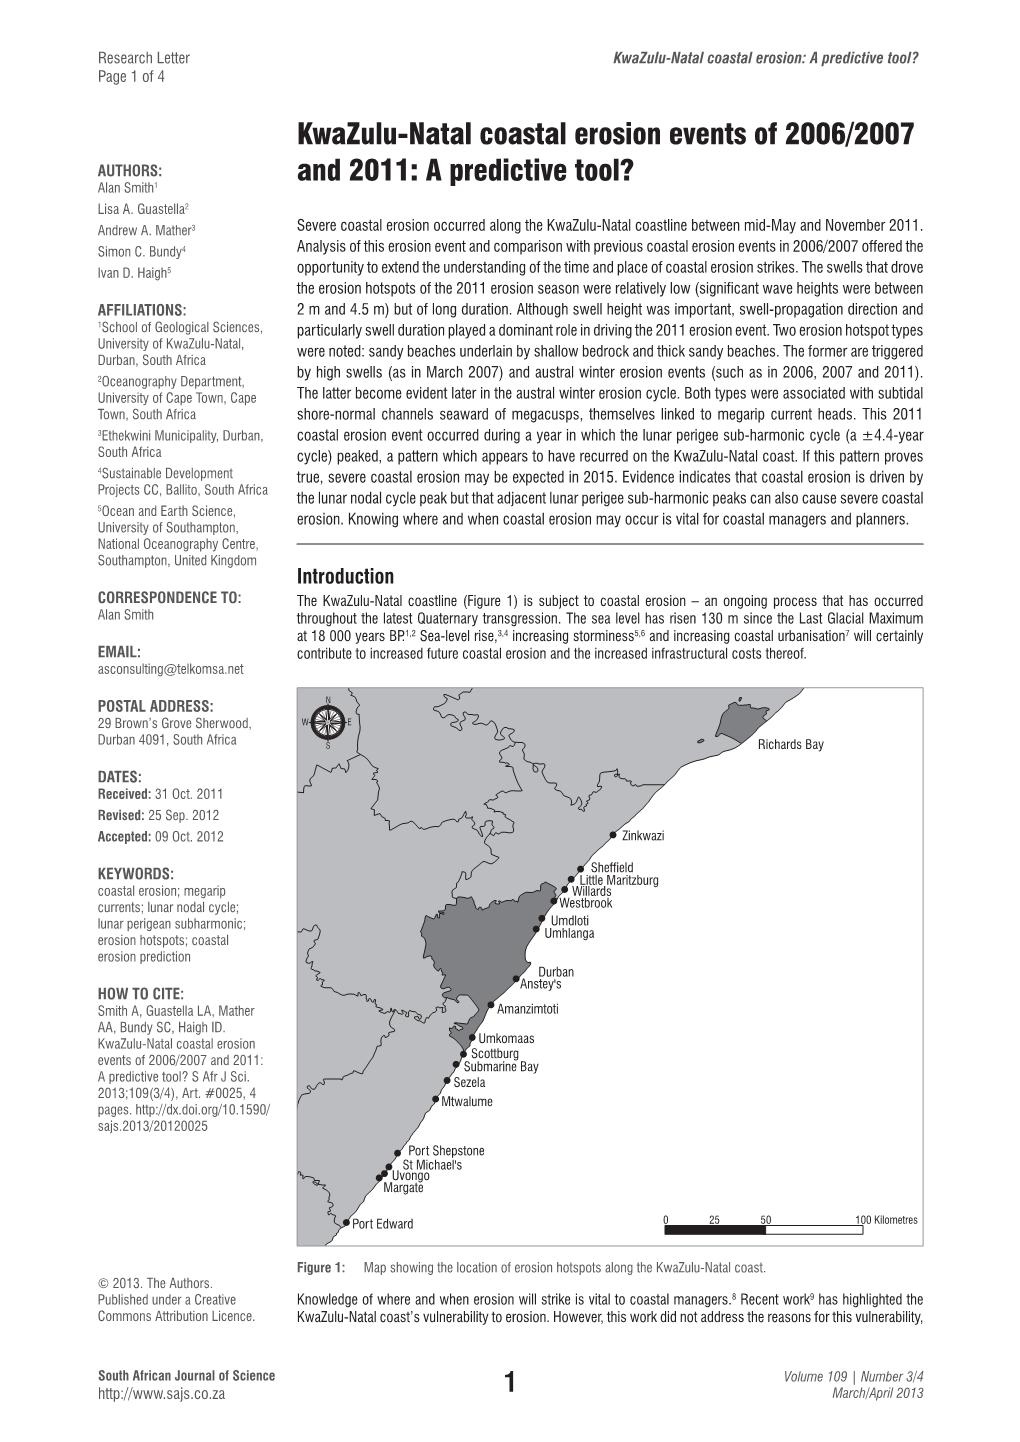 Kwazulu-Natal Coastal Erosion Events of 2006/2007 and 2011